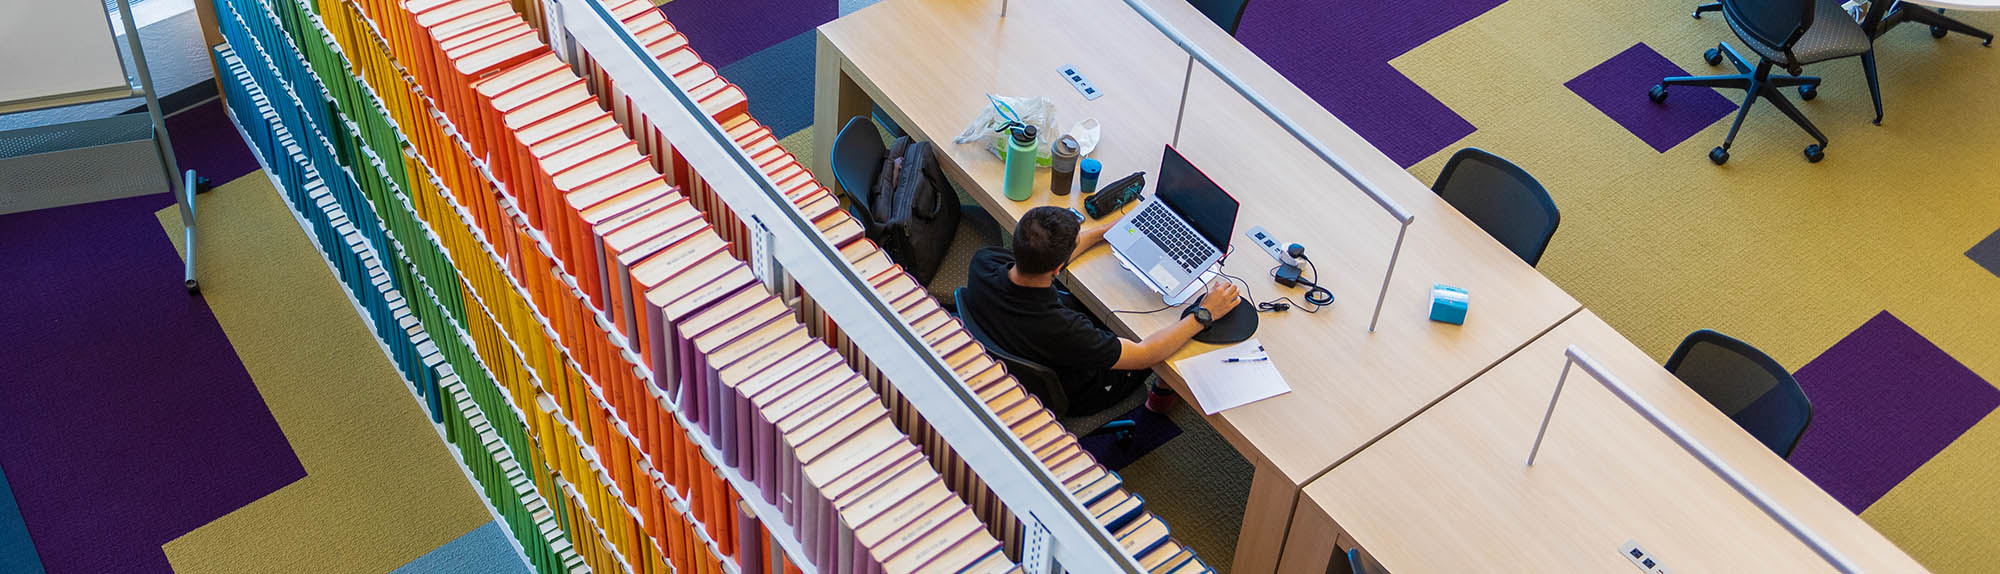 Hình ảnh toàn cảnh một người đang học trong Thư viện HSC với một dãy sách đầy màu sắc phía sau anh ta